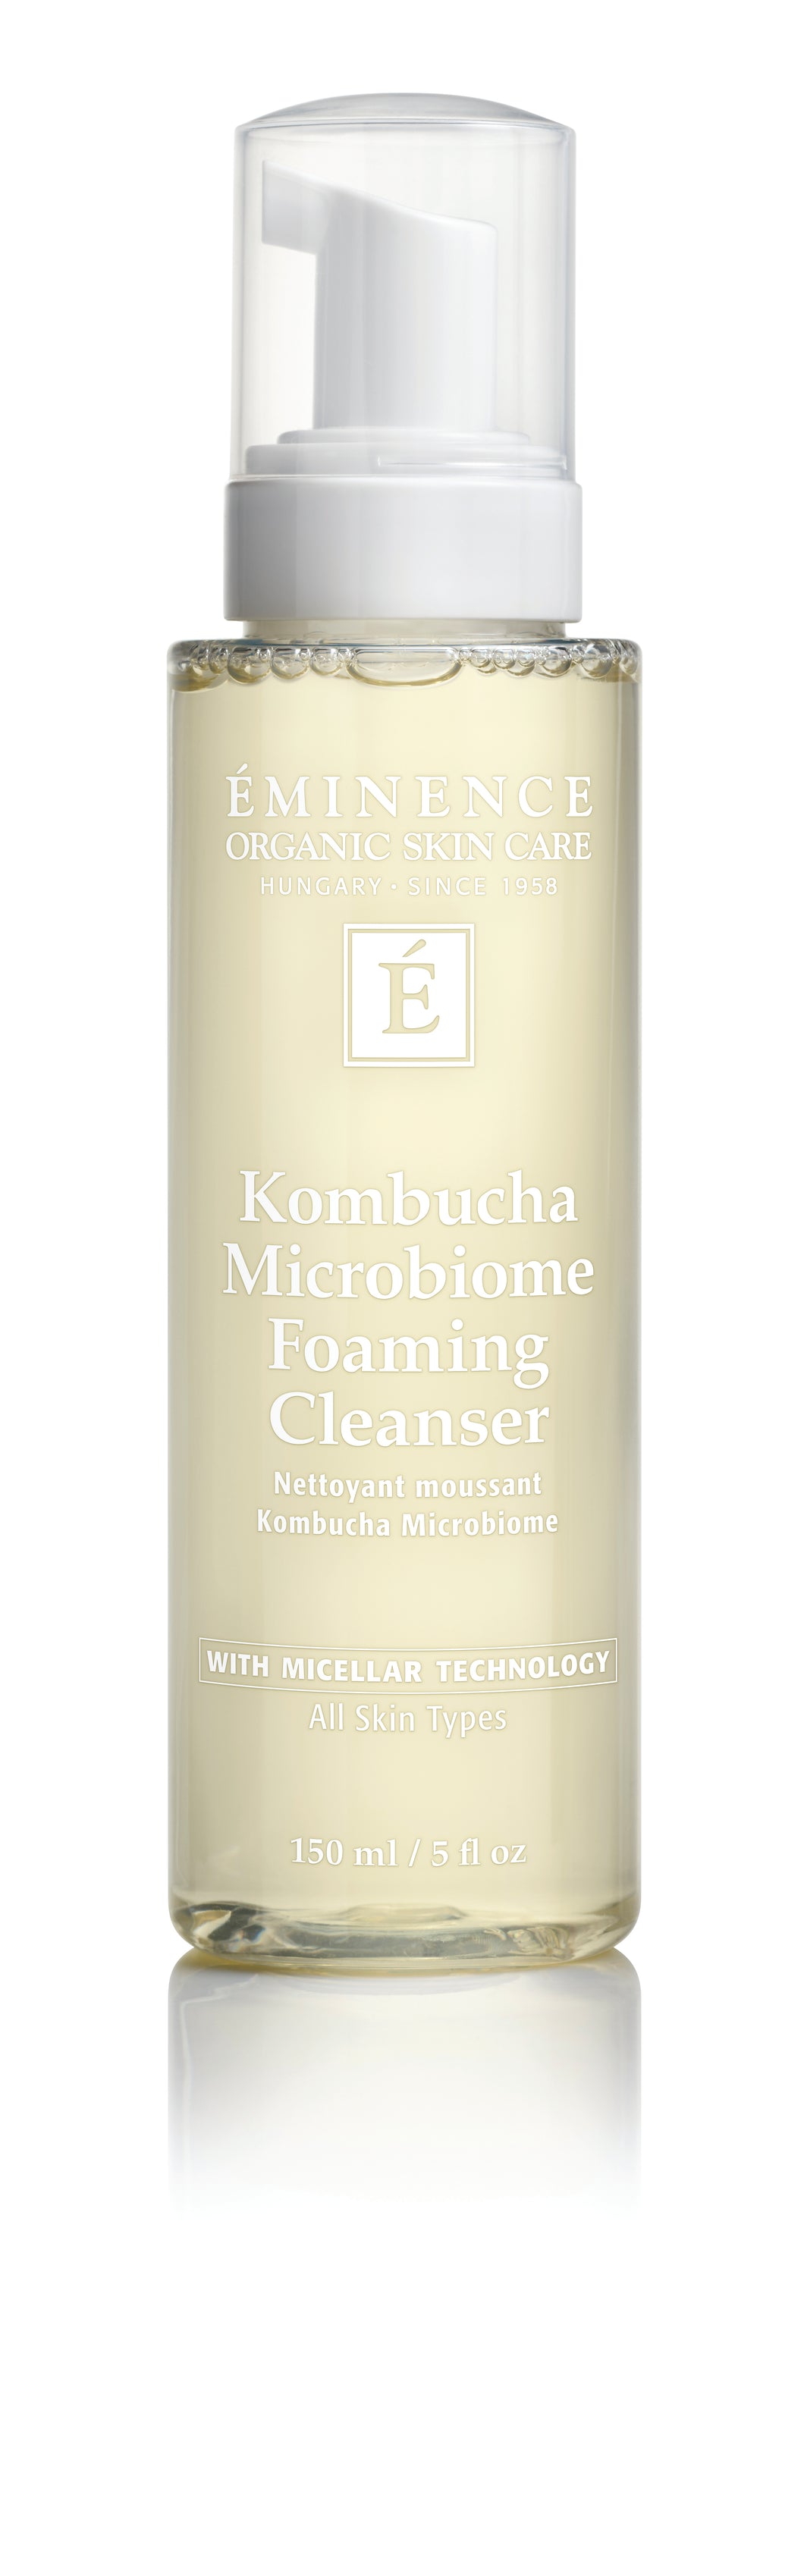 Kombucha Microbiome Foaming Cleanser